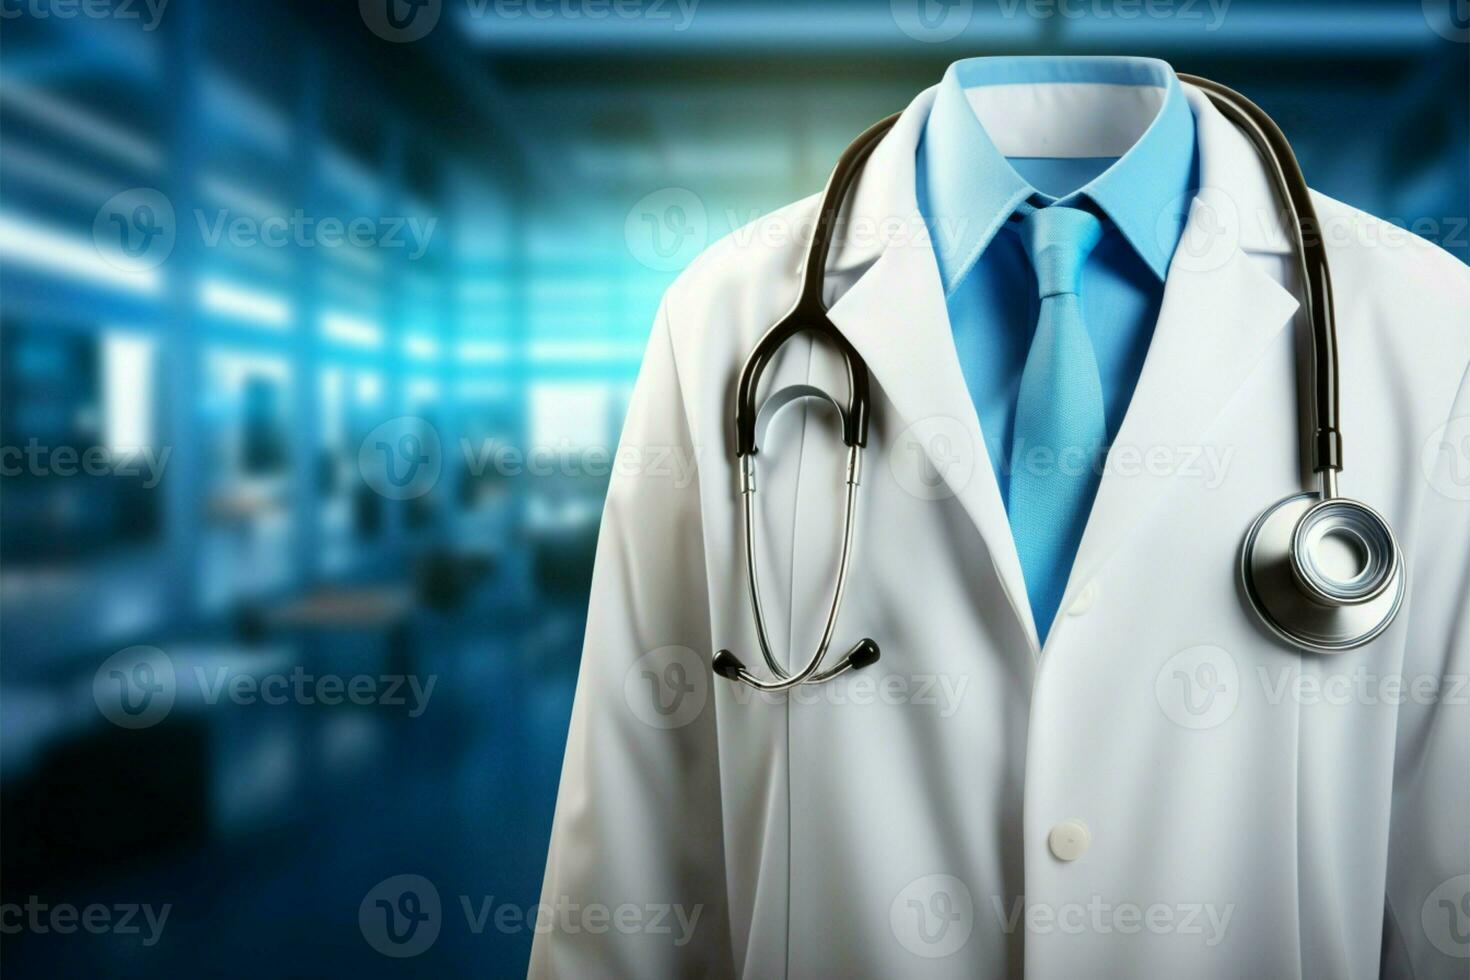 Doctors attire enhances medical scene lab coat, stethoscope on background AI Generated photo